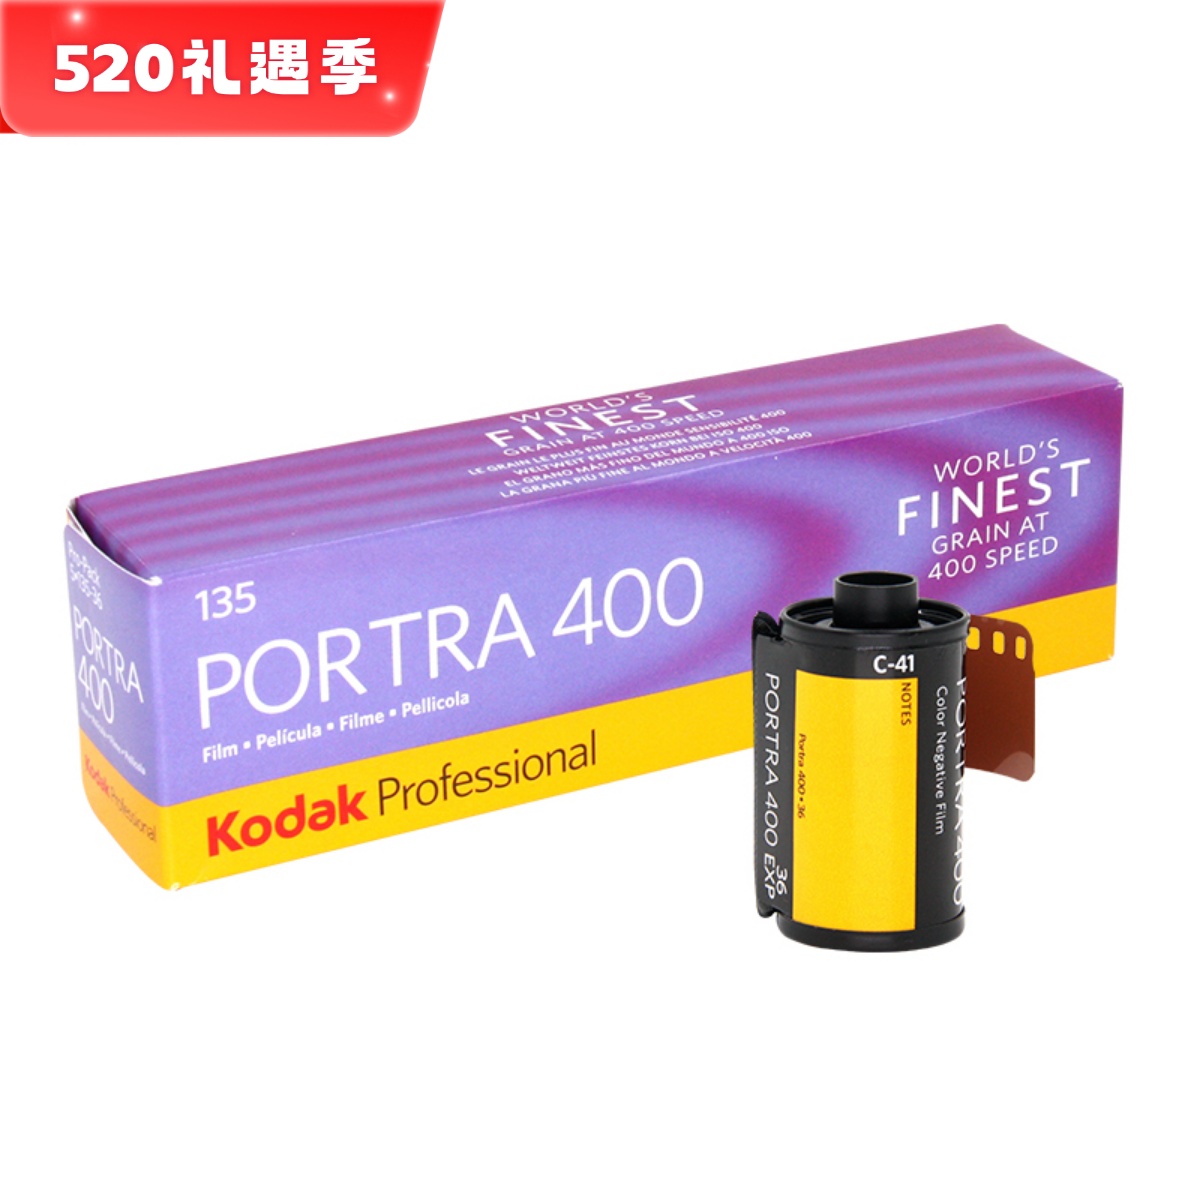 现货Kodak柯达炮塔PORTRA400专业135彩色负片胶卷 25年03月单卷价